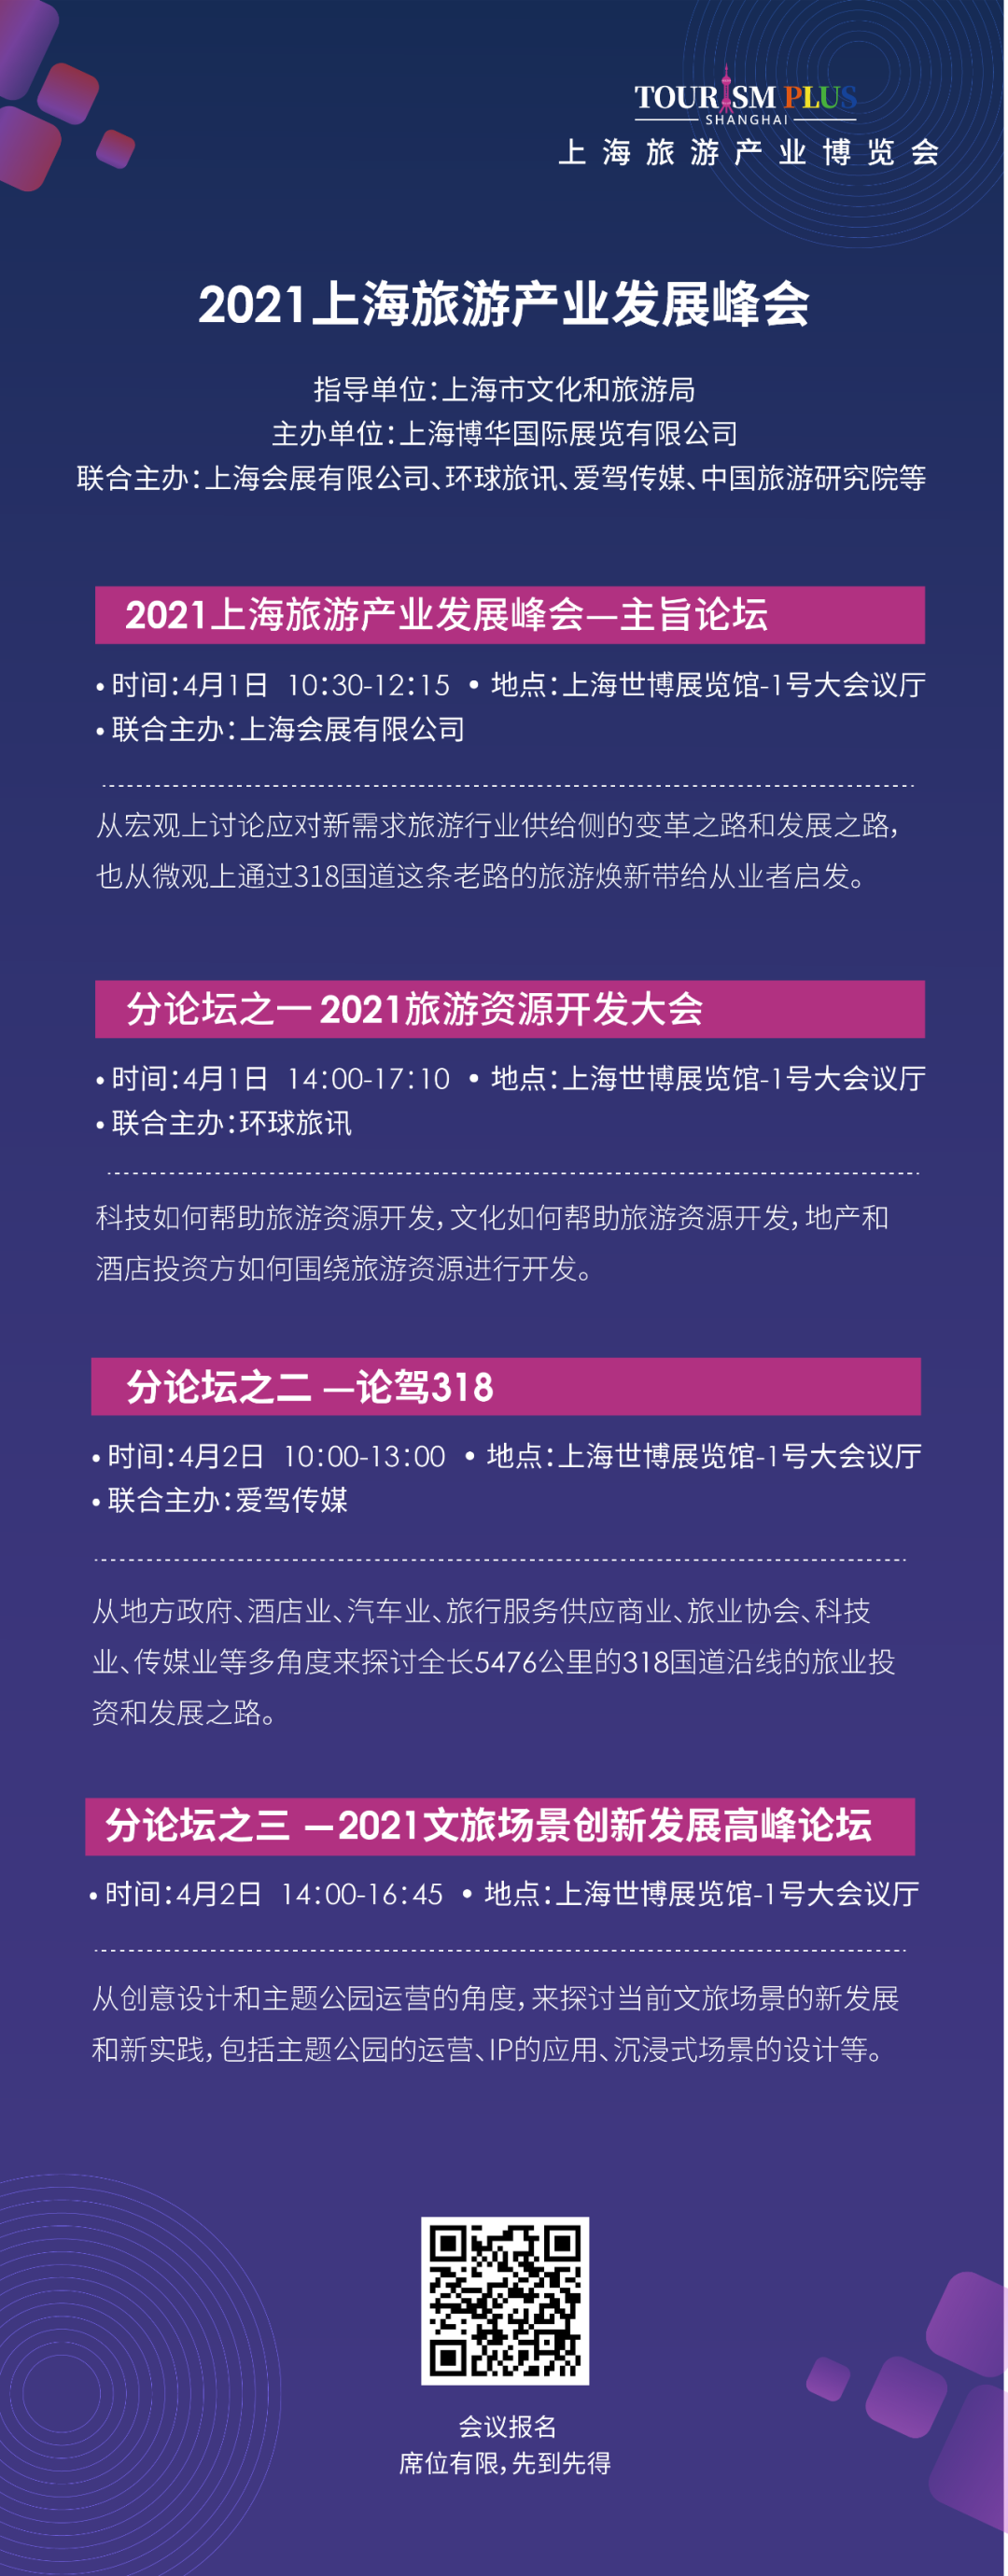 上海性展博会_上海性文化博览会门票_西安性博会门票